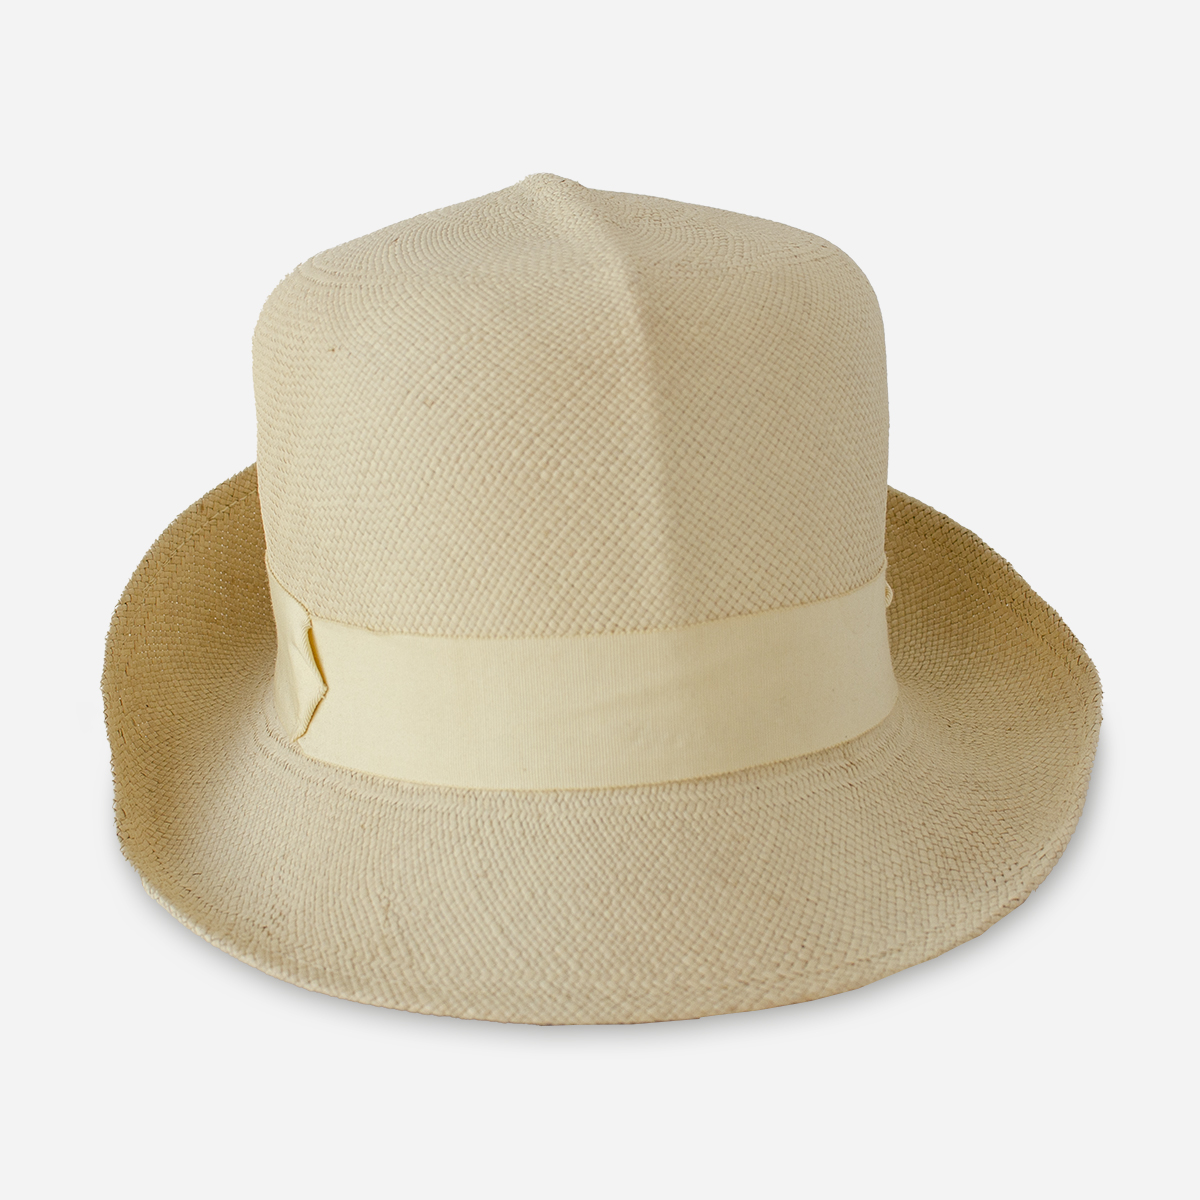 Valerie Modes Straw hat